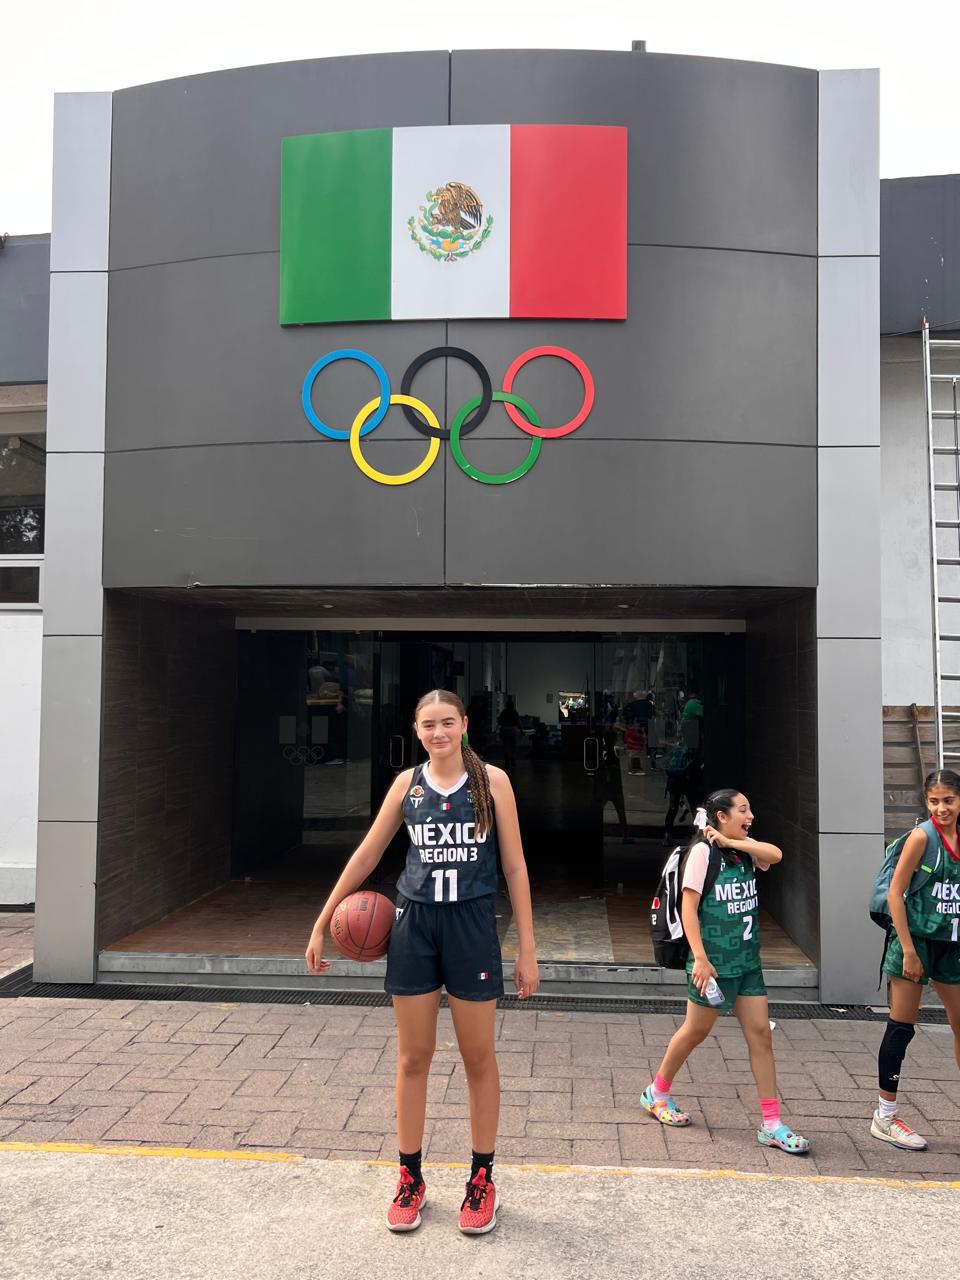 $!La basquetbolista de 13 años de Saltillo, Coahuila, ha demostrado que la disciplina y el trabajo duro pueden llevar a grandes logros.